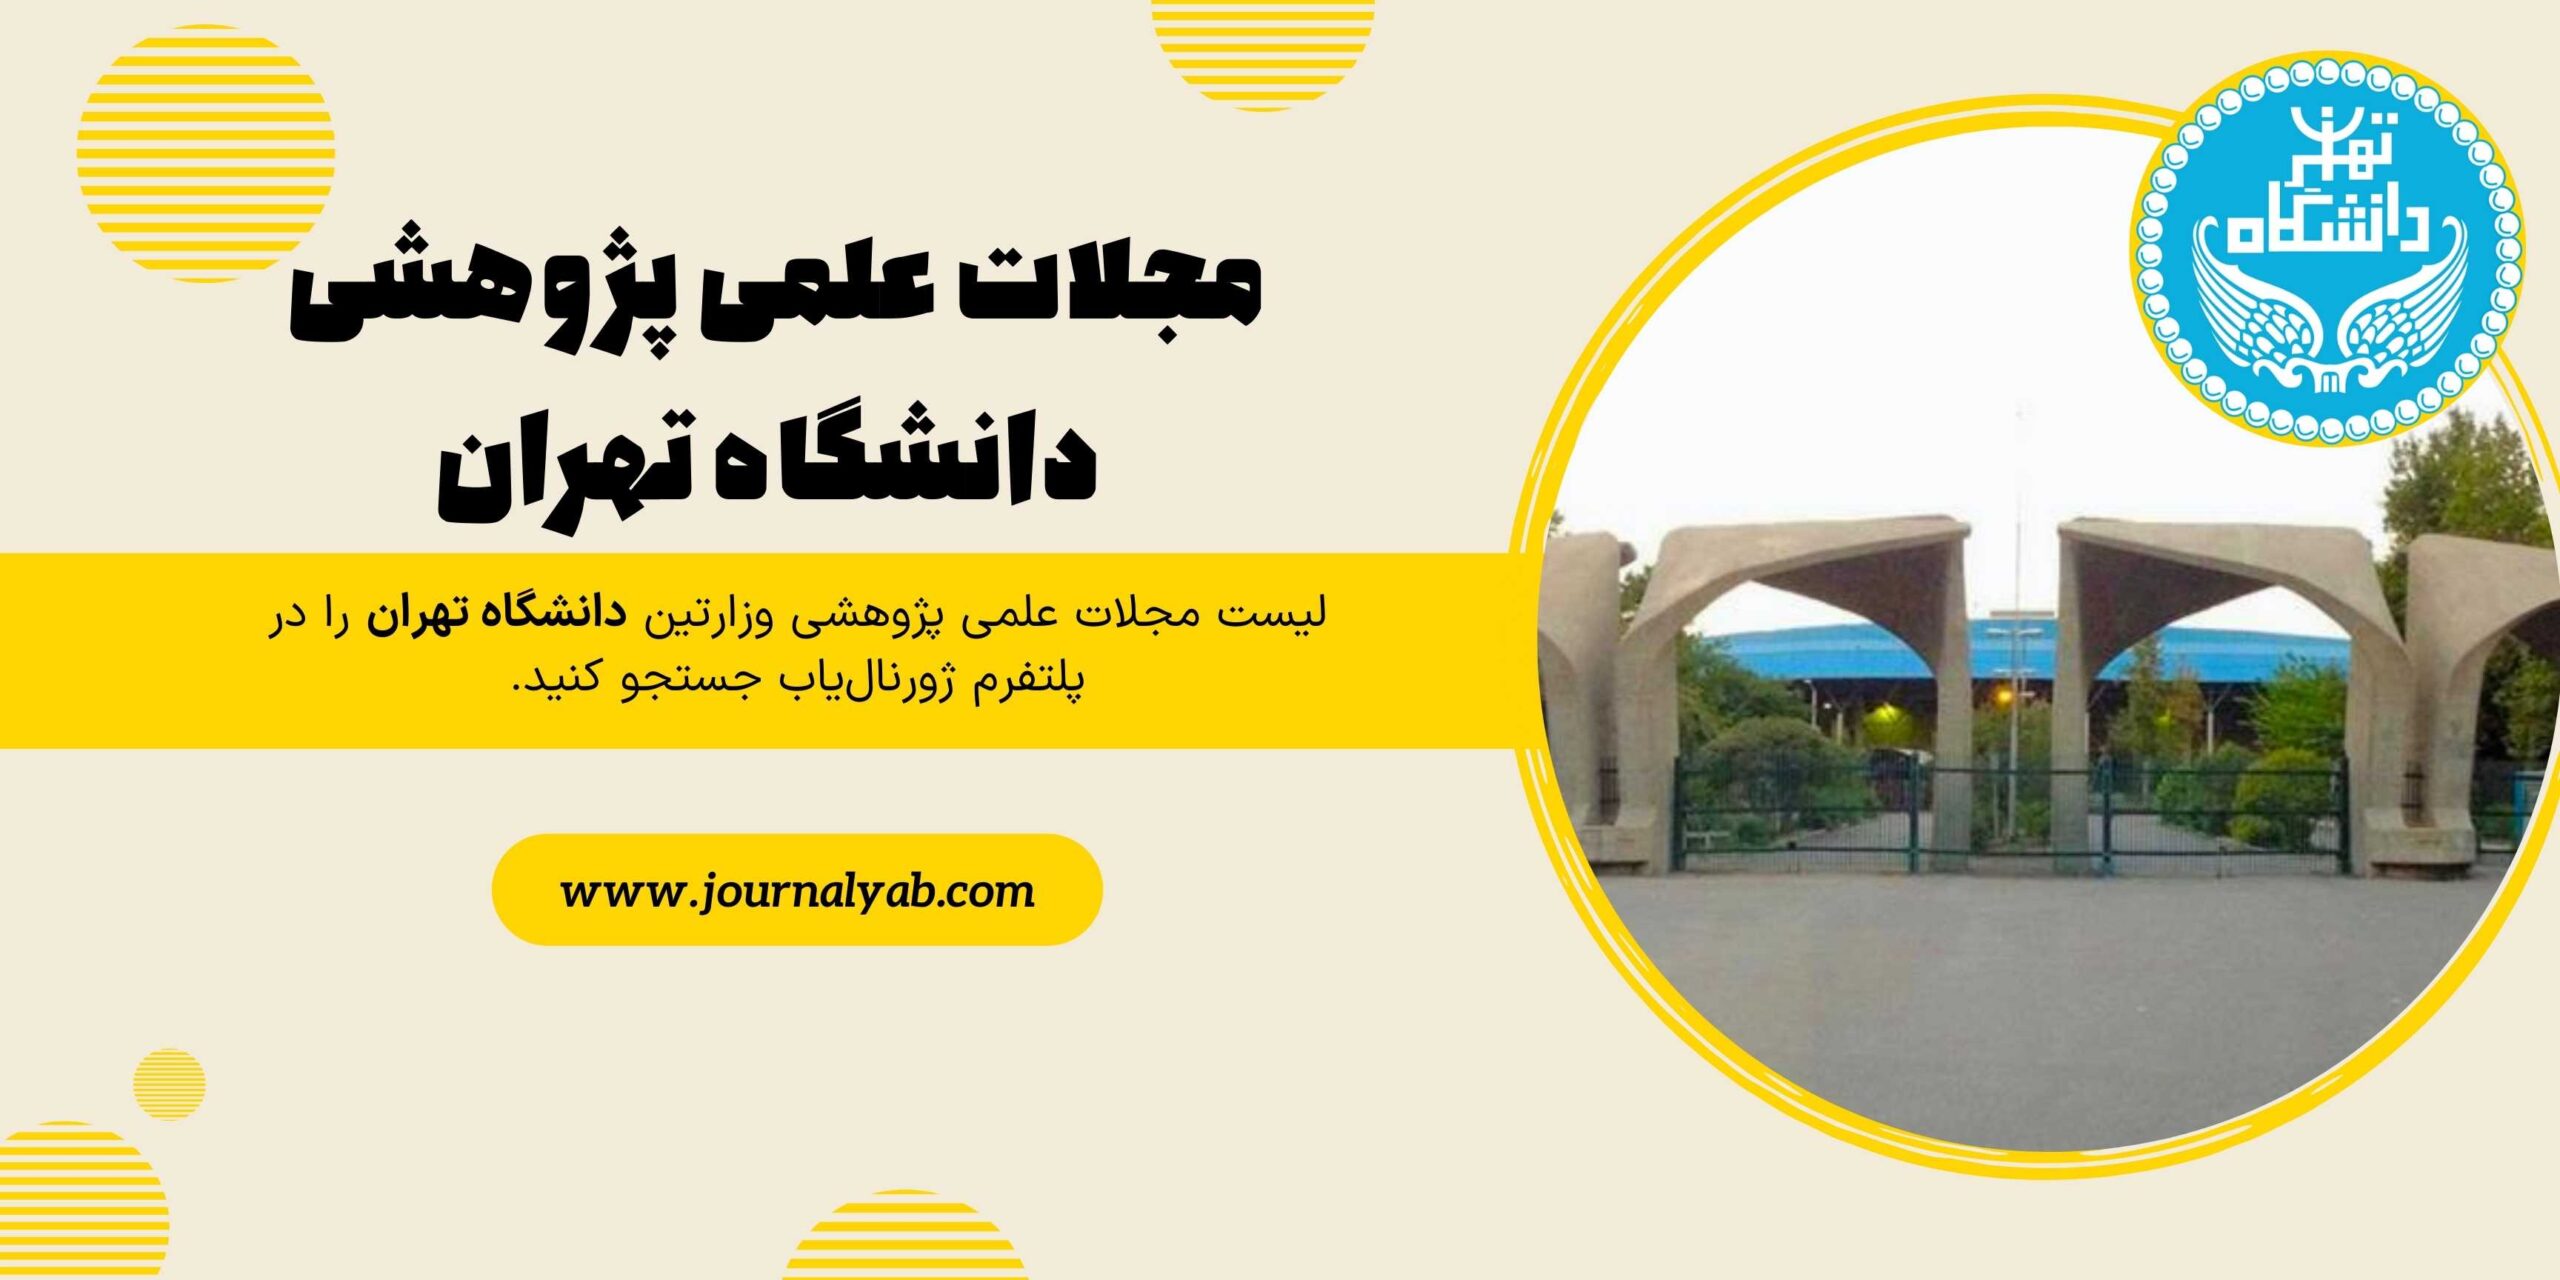 لیست مجلات علمی پژوهشی دانشگاه تهران